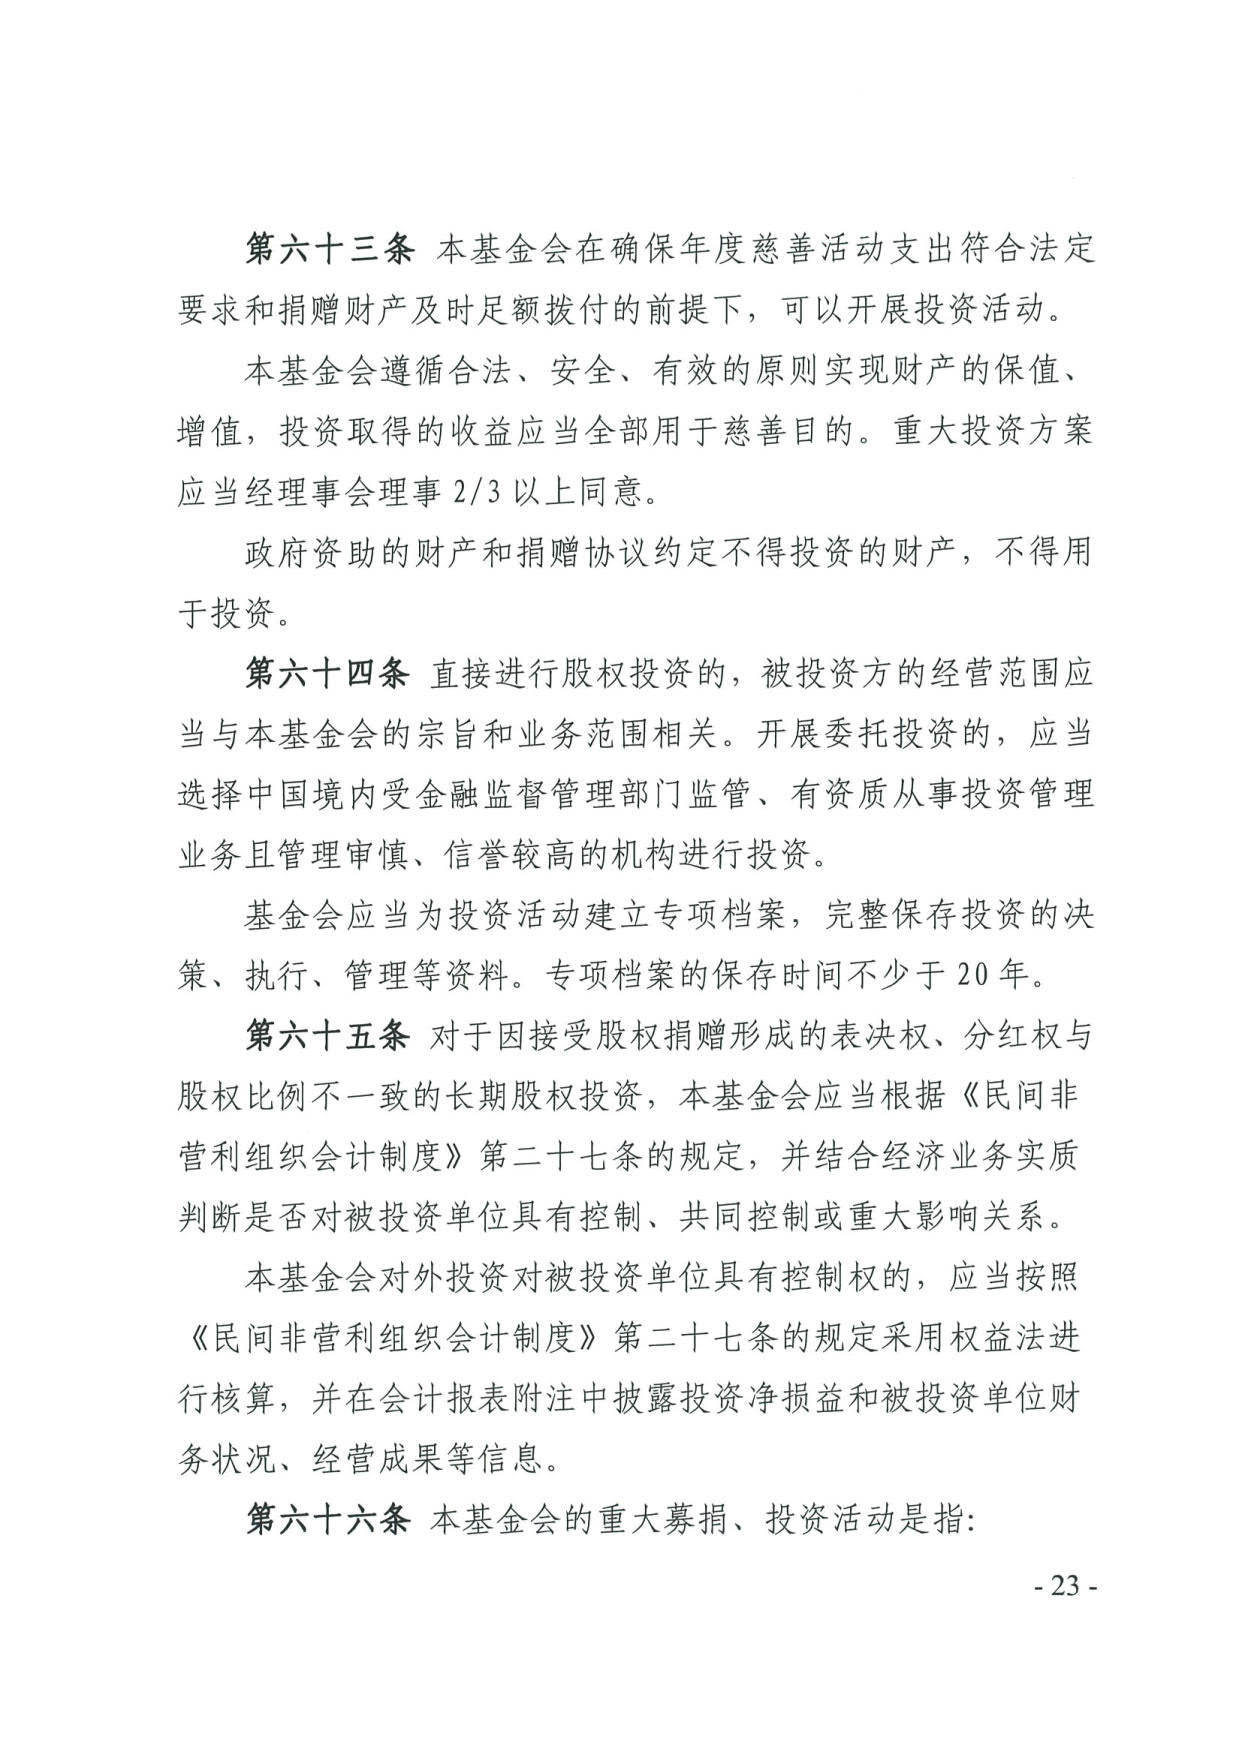 广东省民政厅关于印发《广东省基金会章程示范文本》的通知(4)_23.jpg